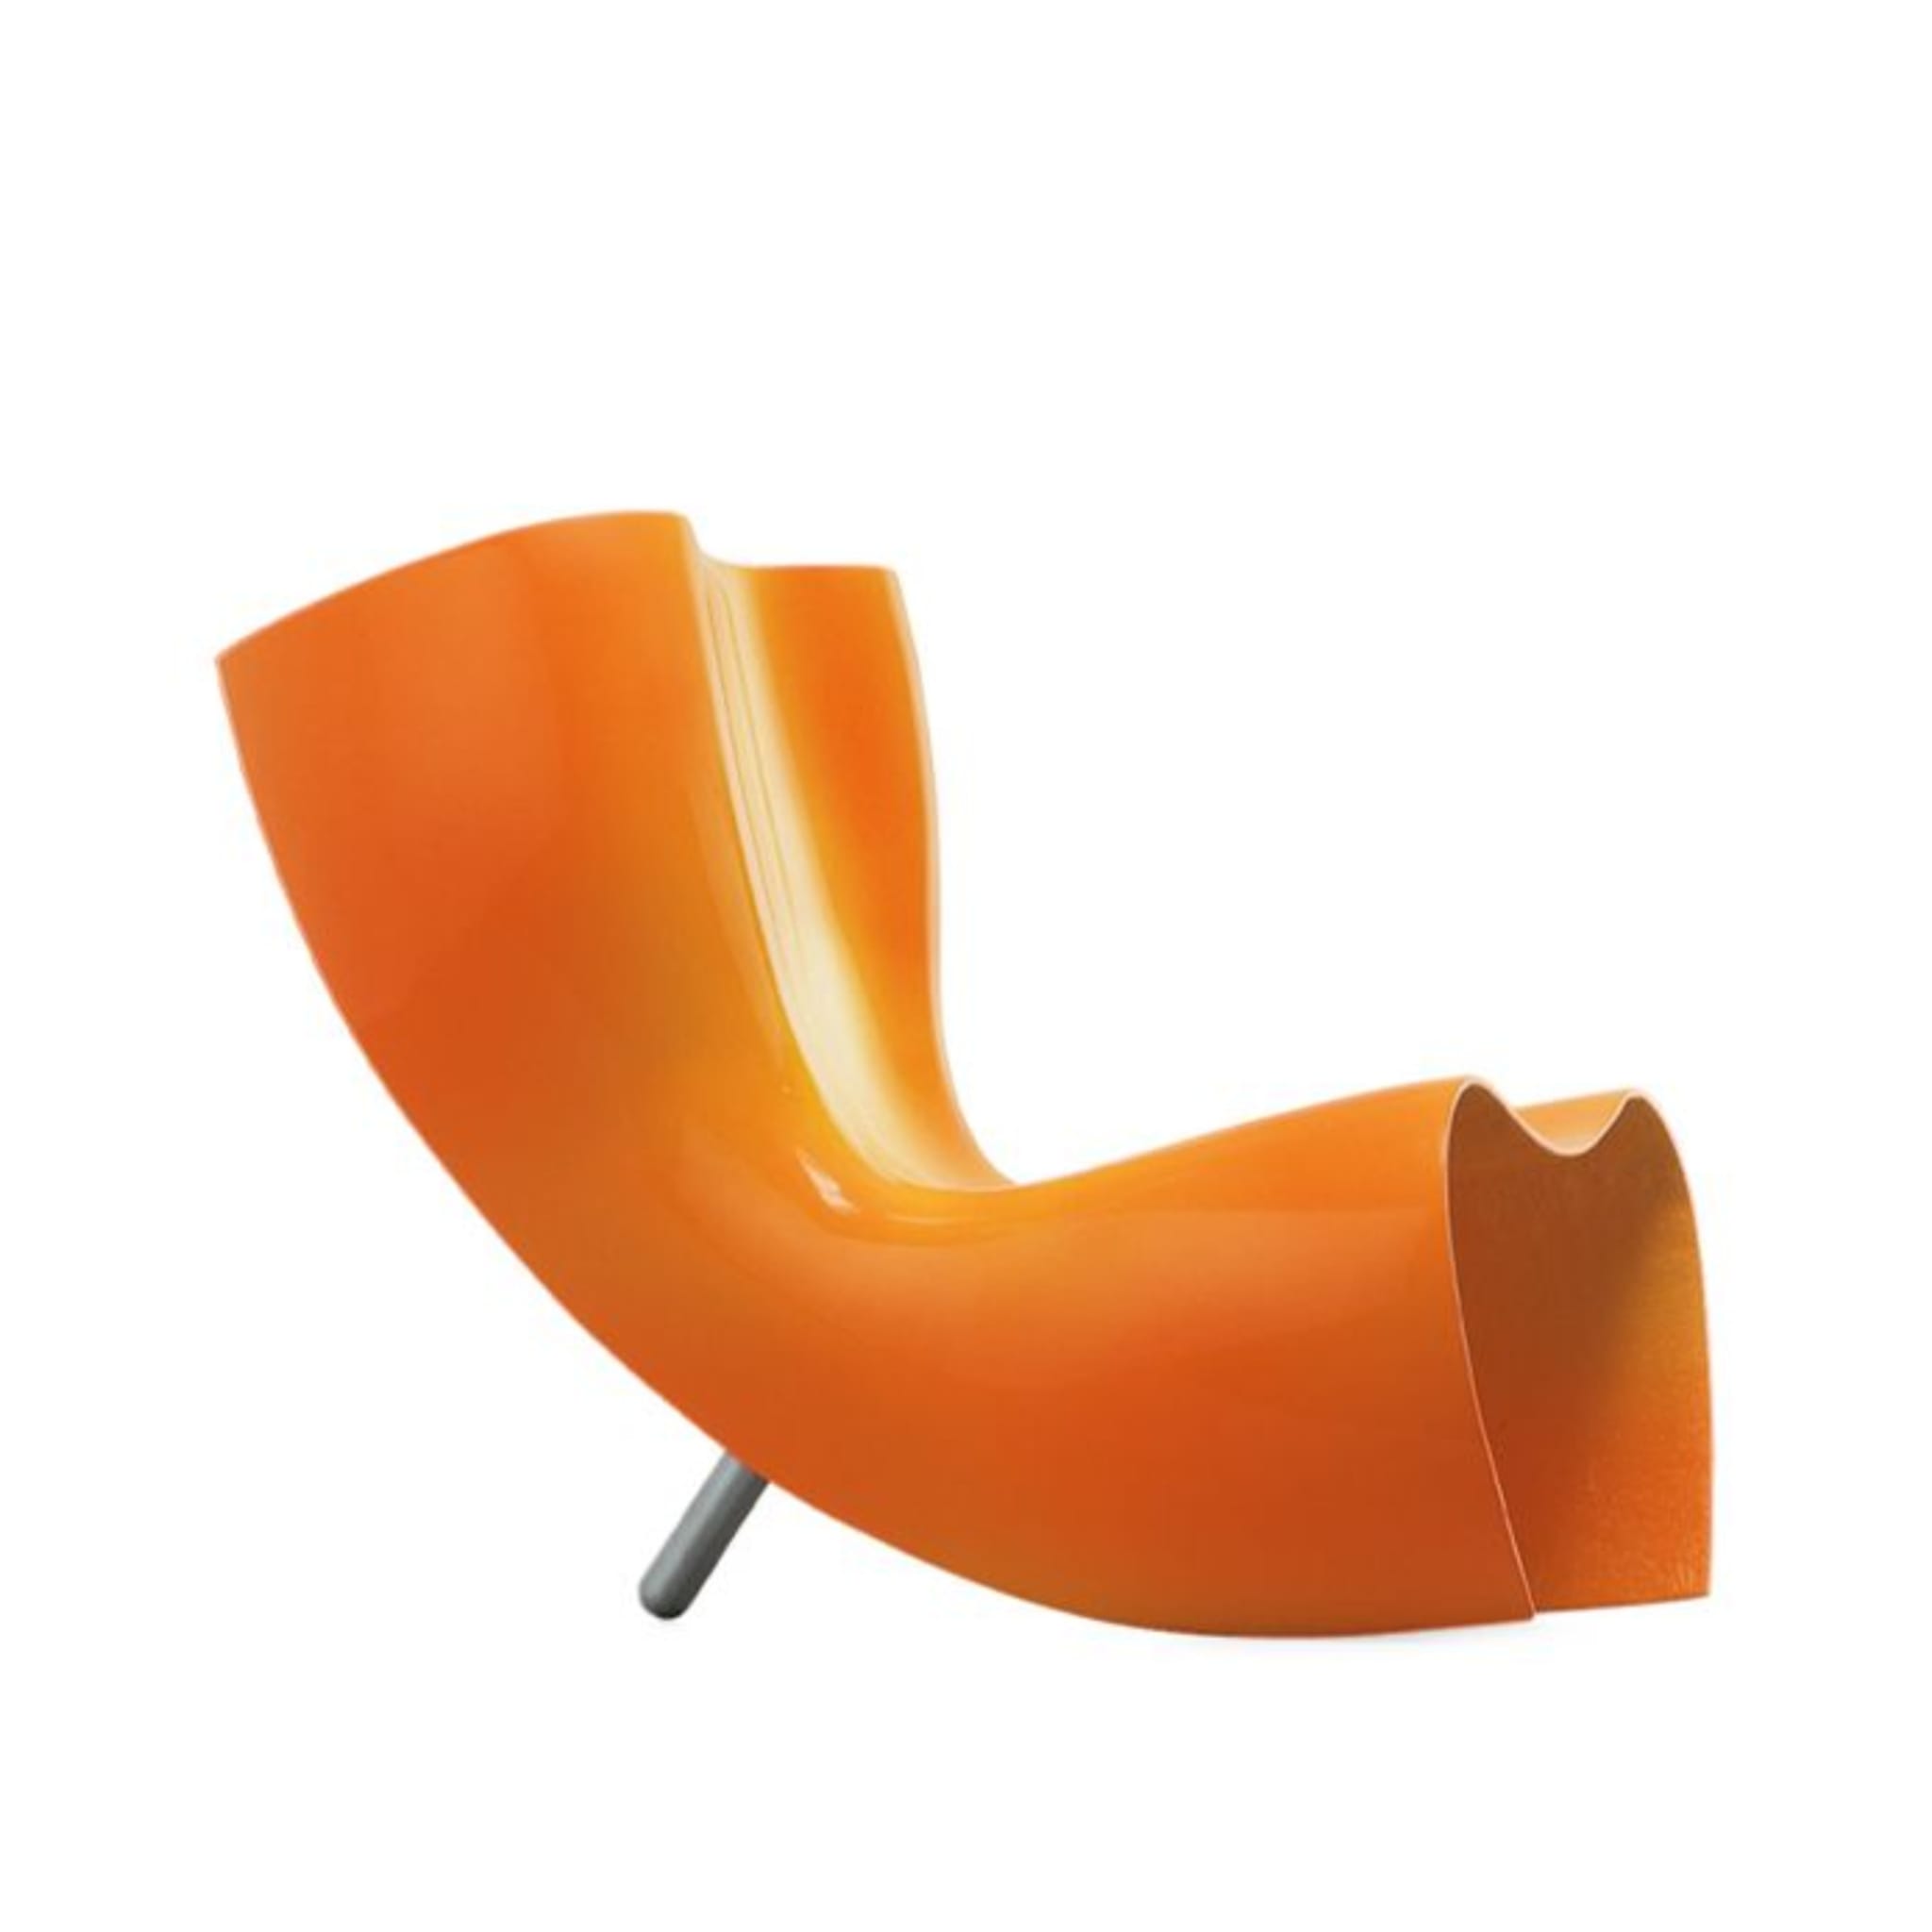 Felt Chair by Marc Newson - Main view